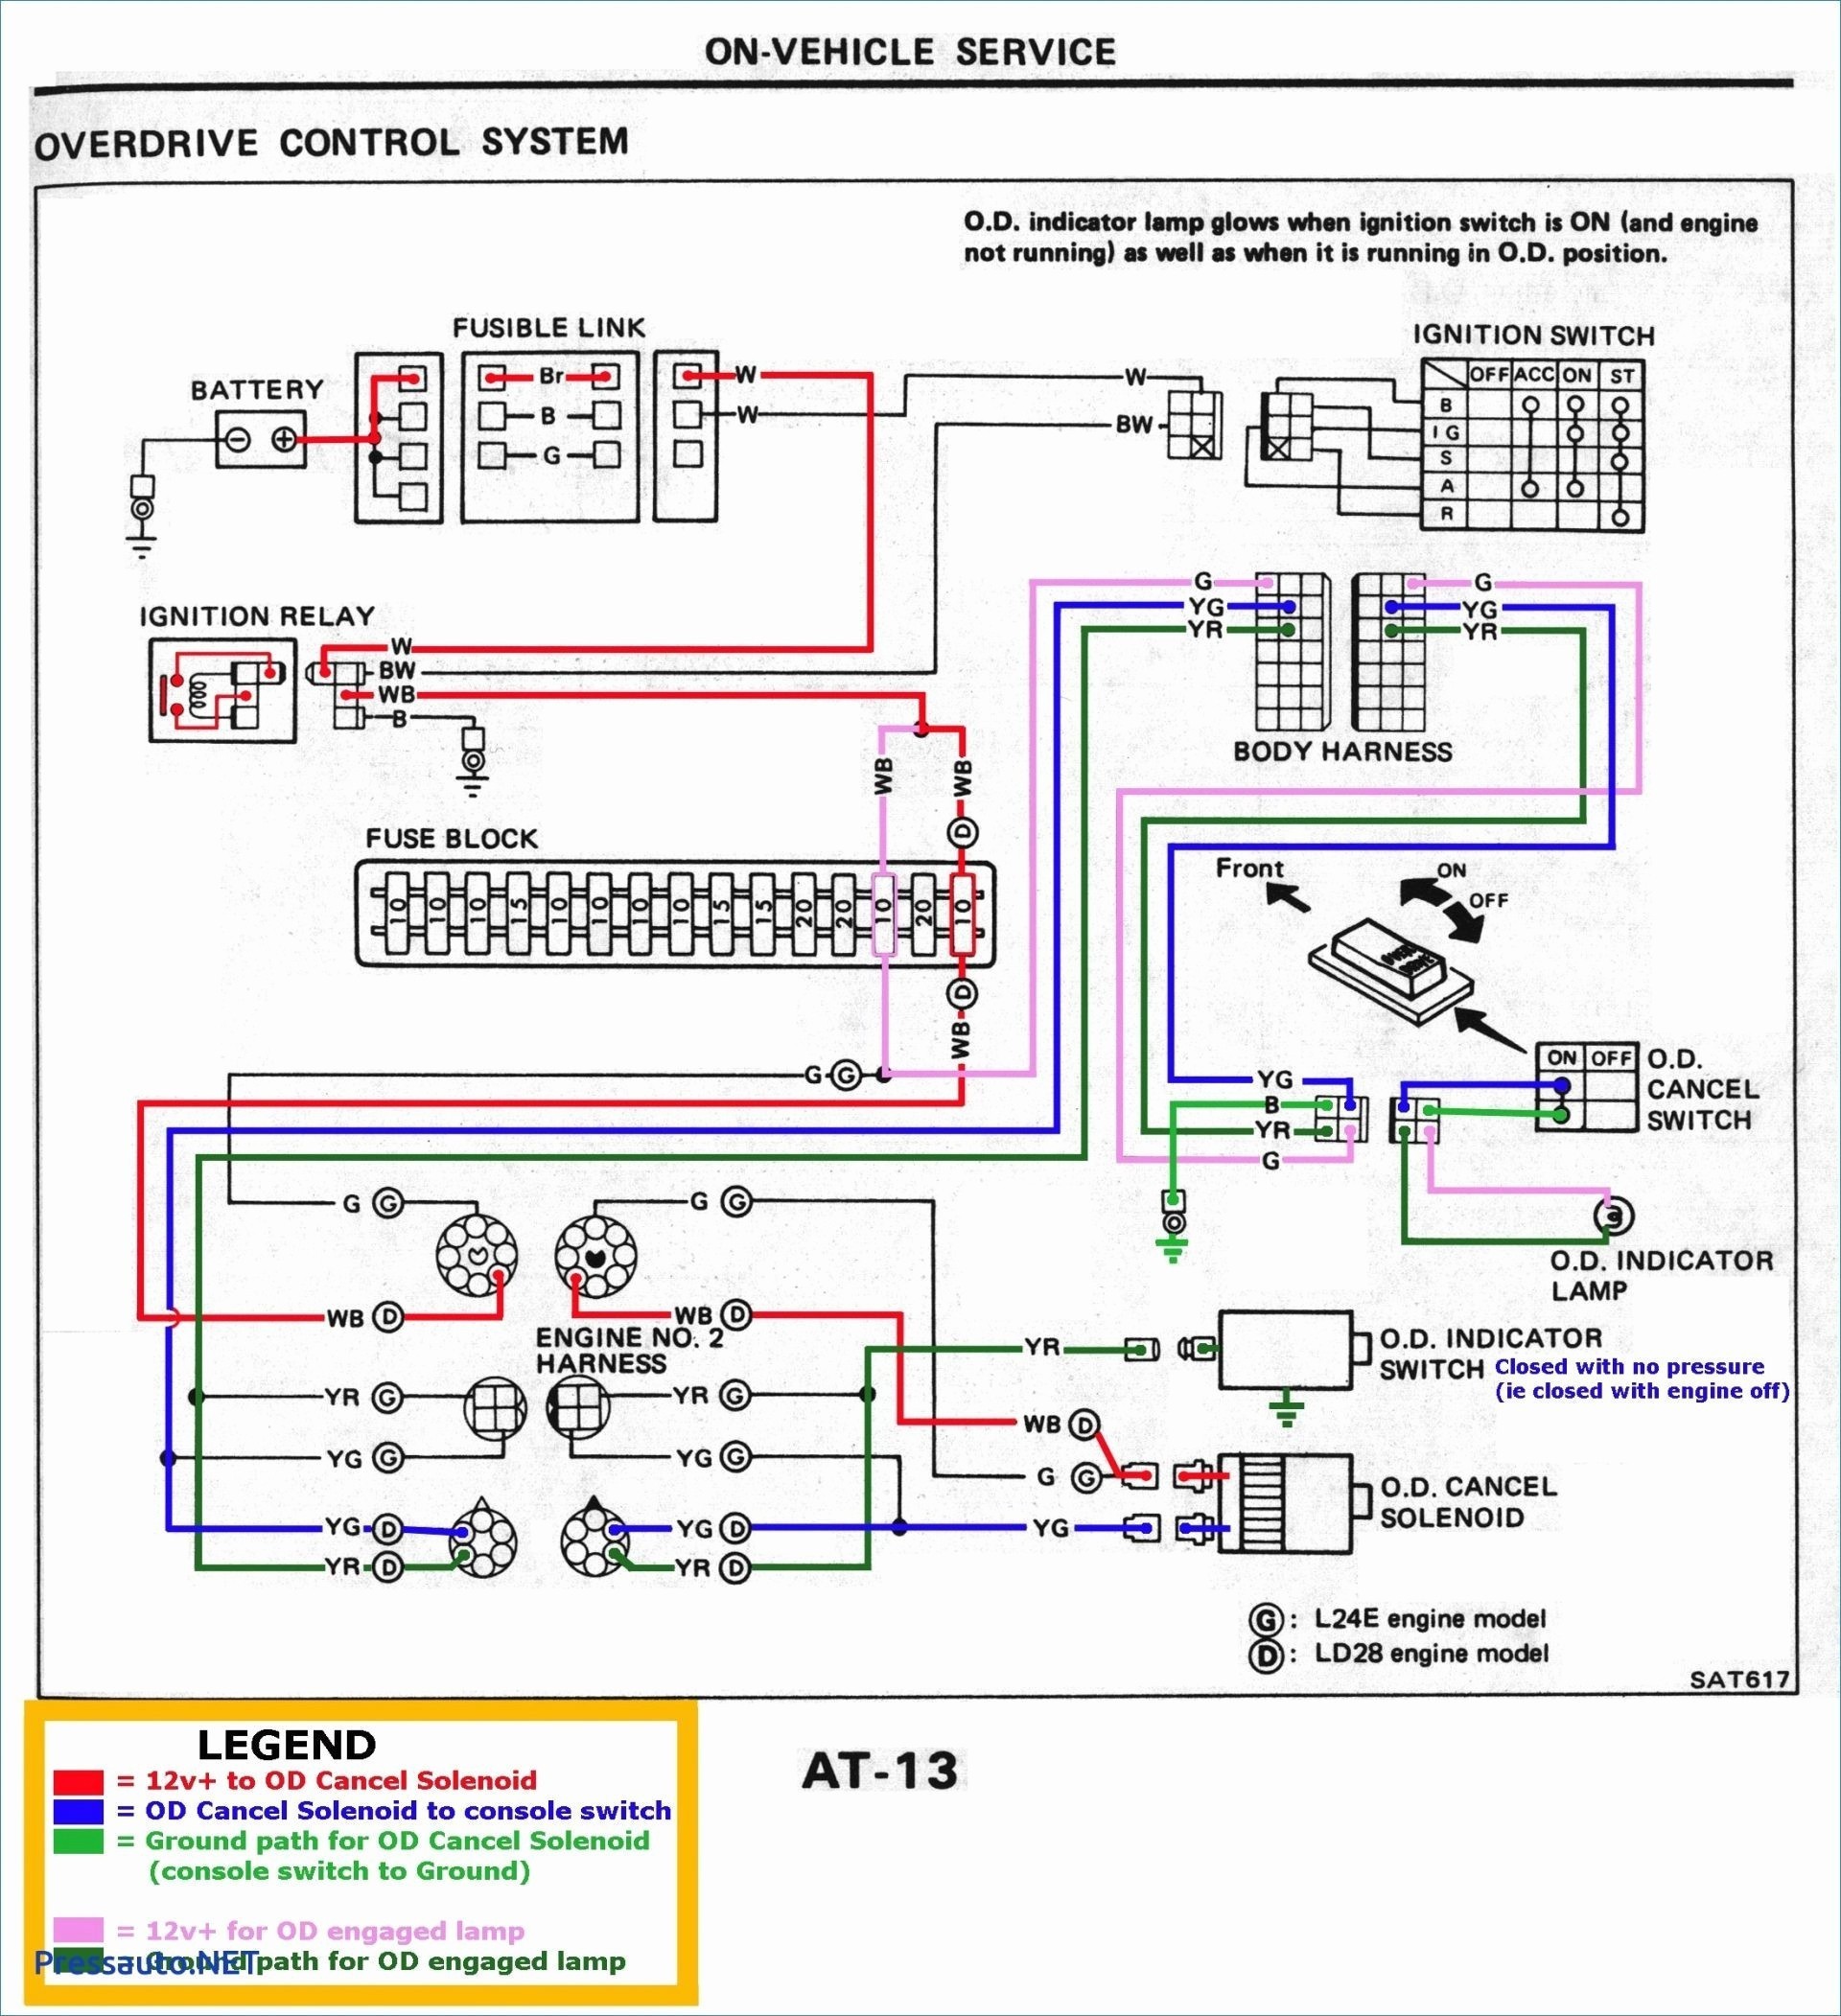 komatsu wiring diagram - Wiring Diagram komatsu wiring schematic pc 6 